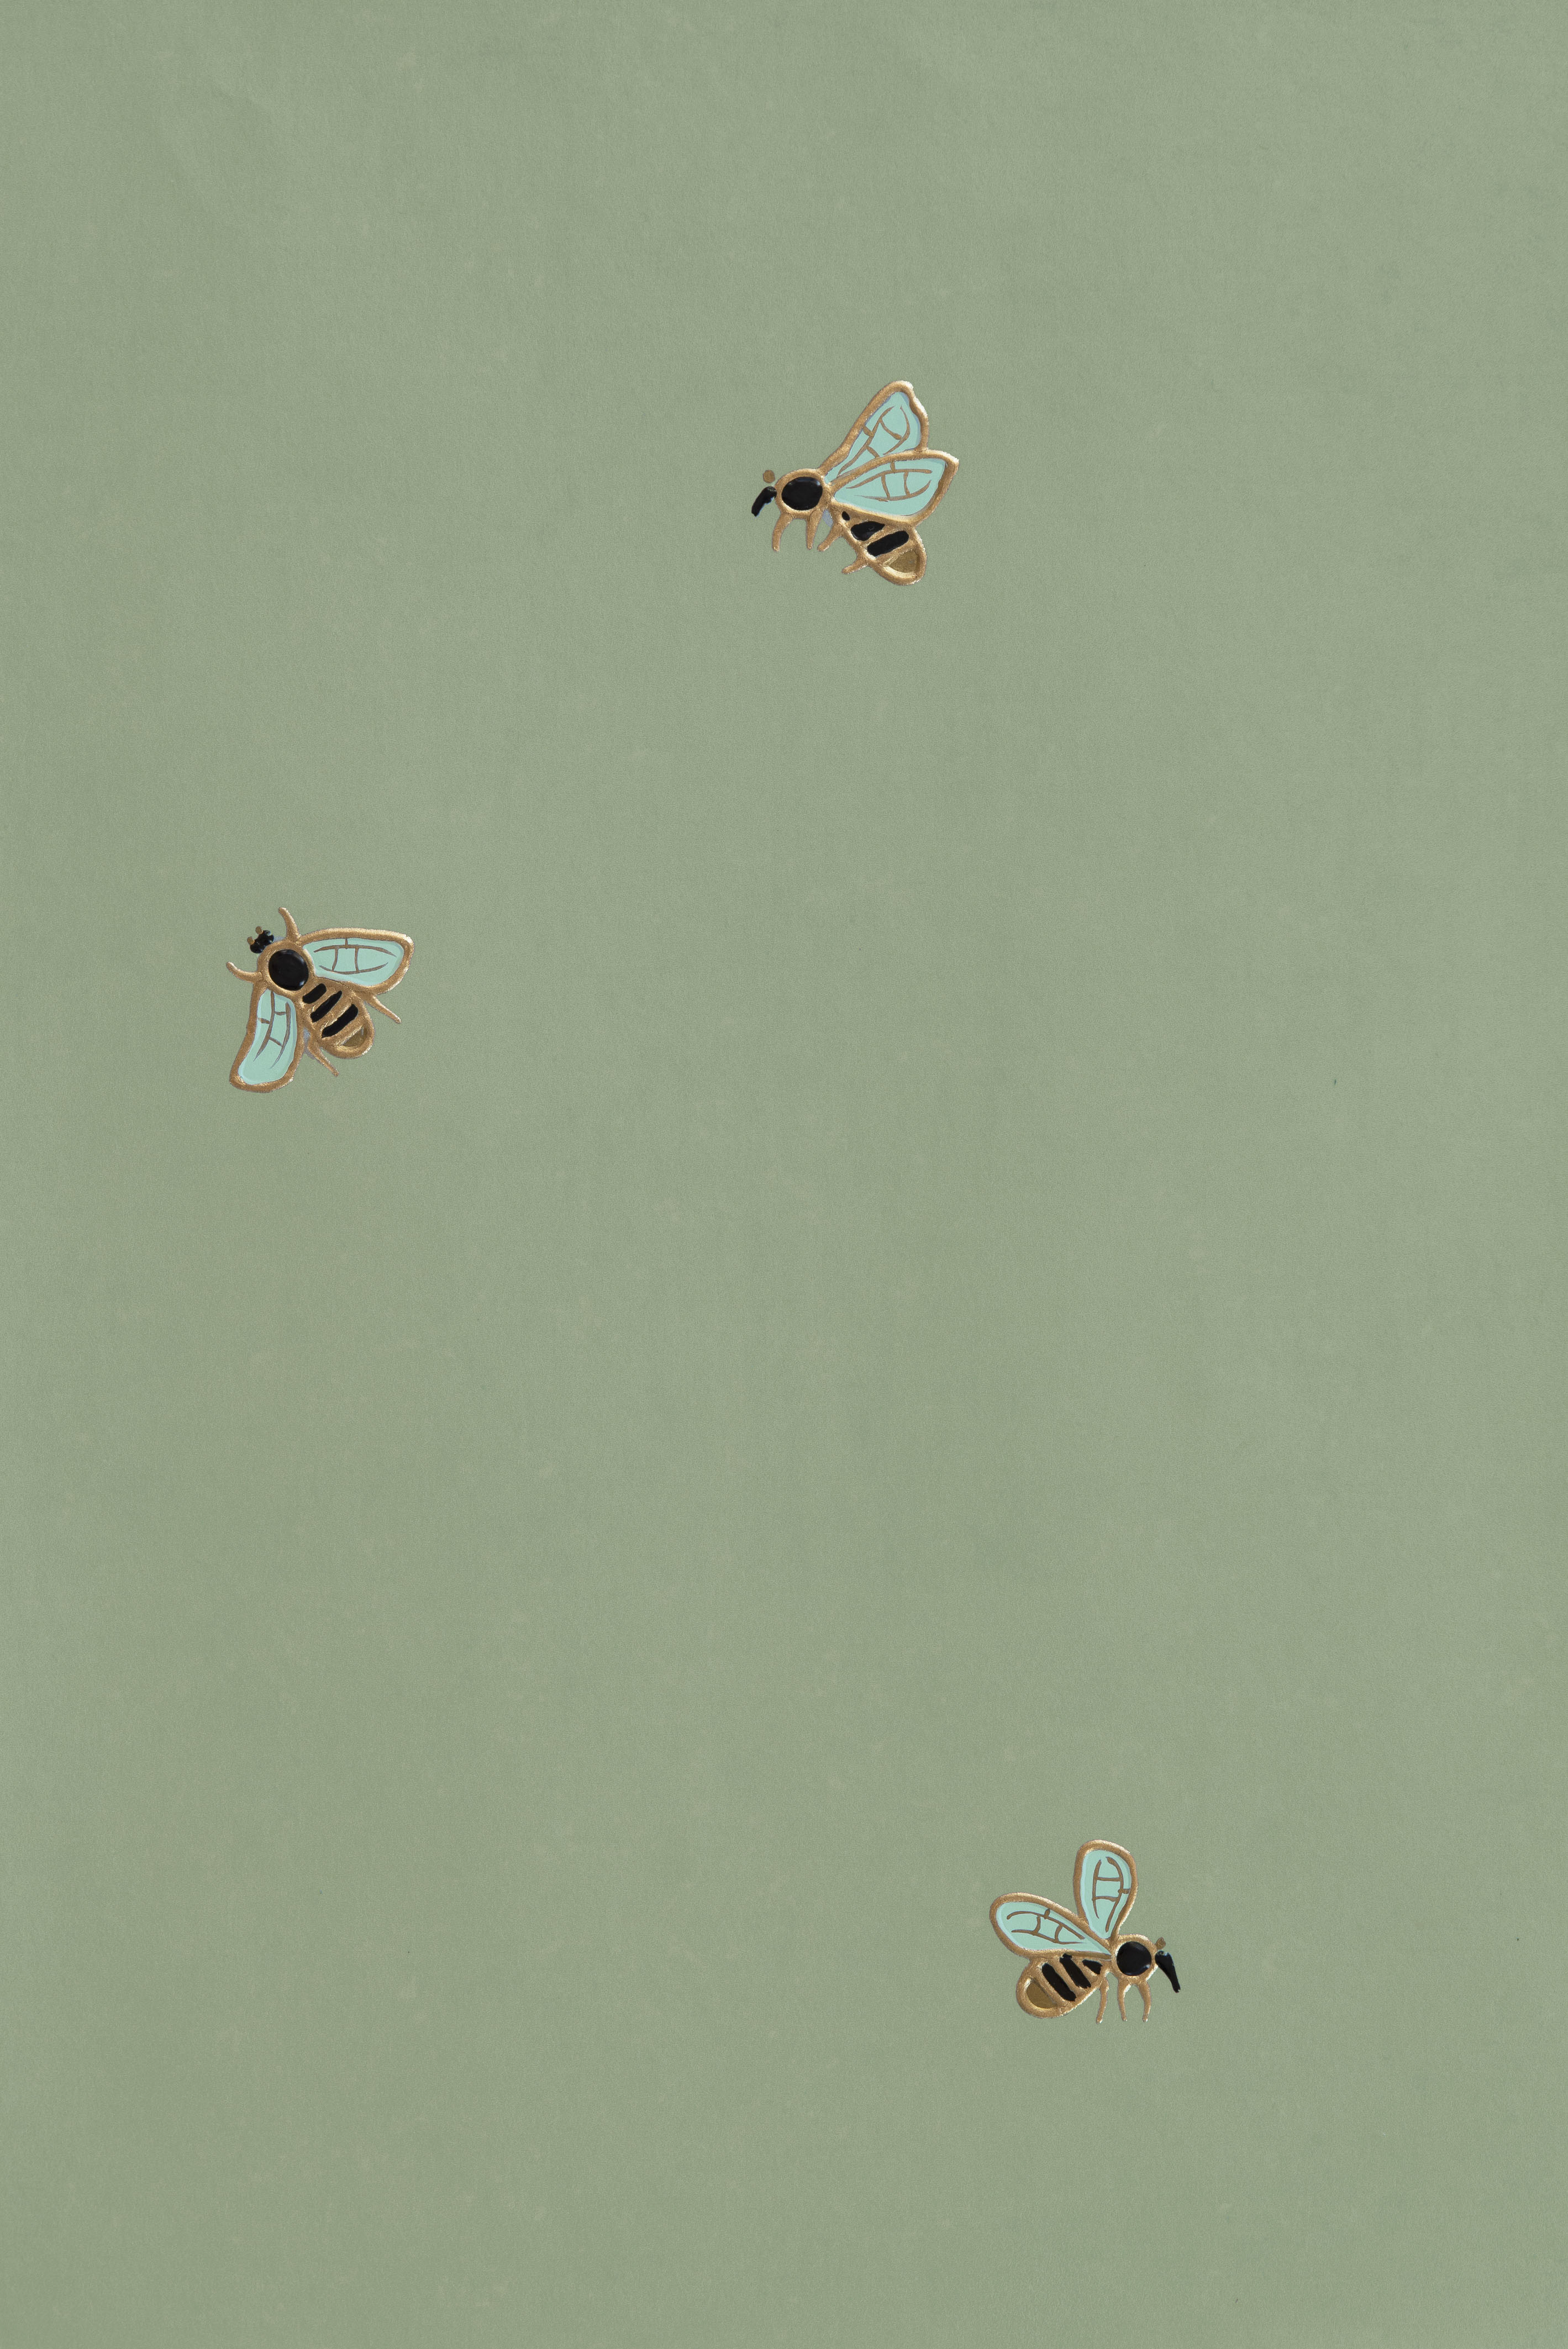 Vintage Bee Aesthetic Wallpapers